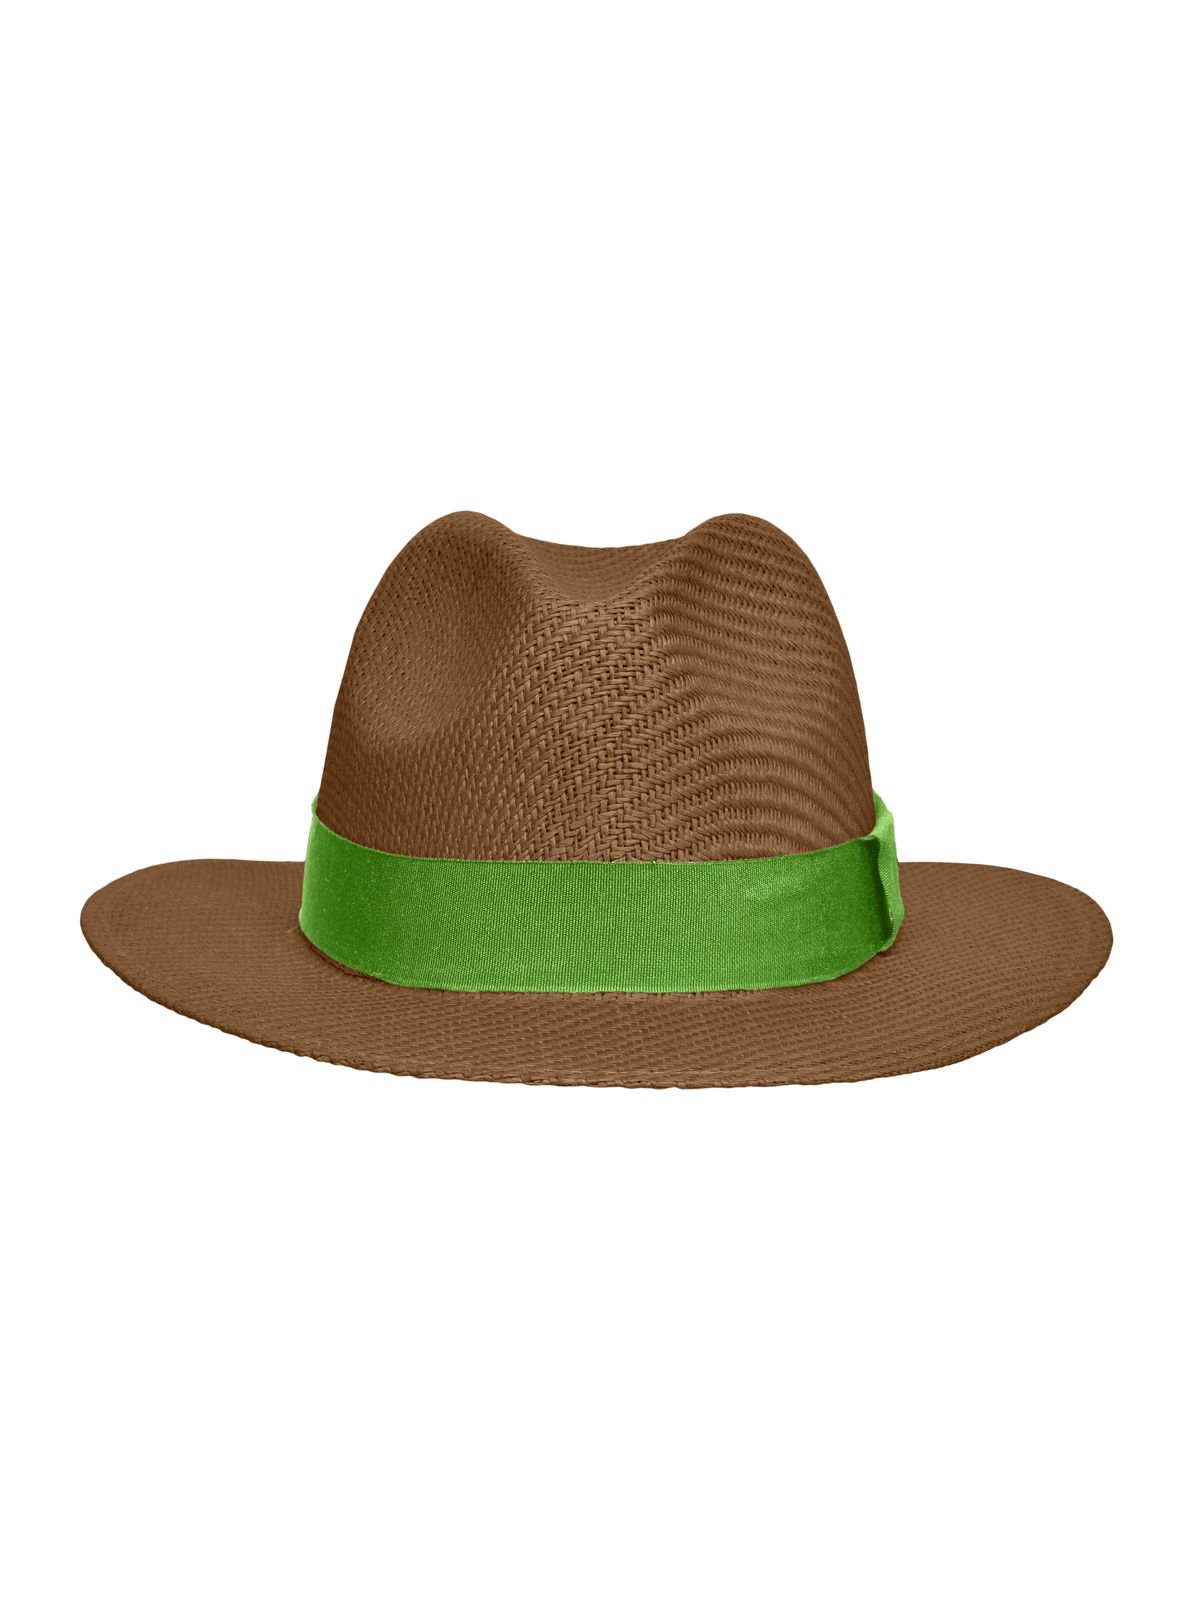 traveller-hat-nougat-lime-green.webp